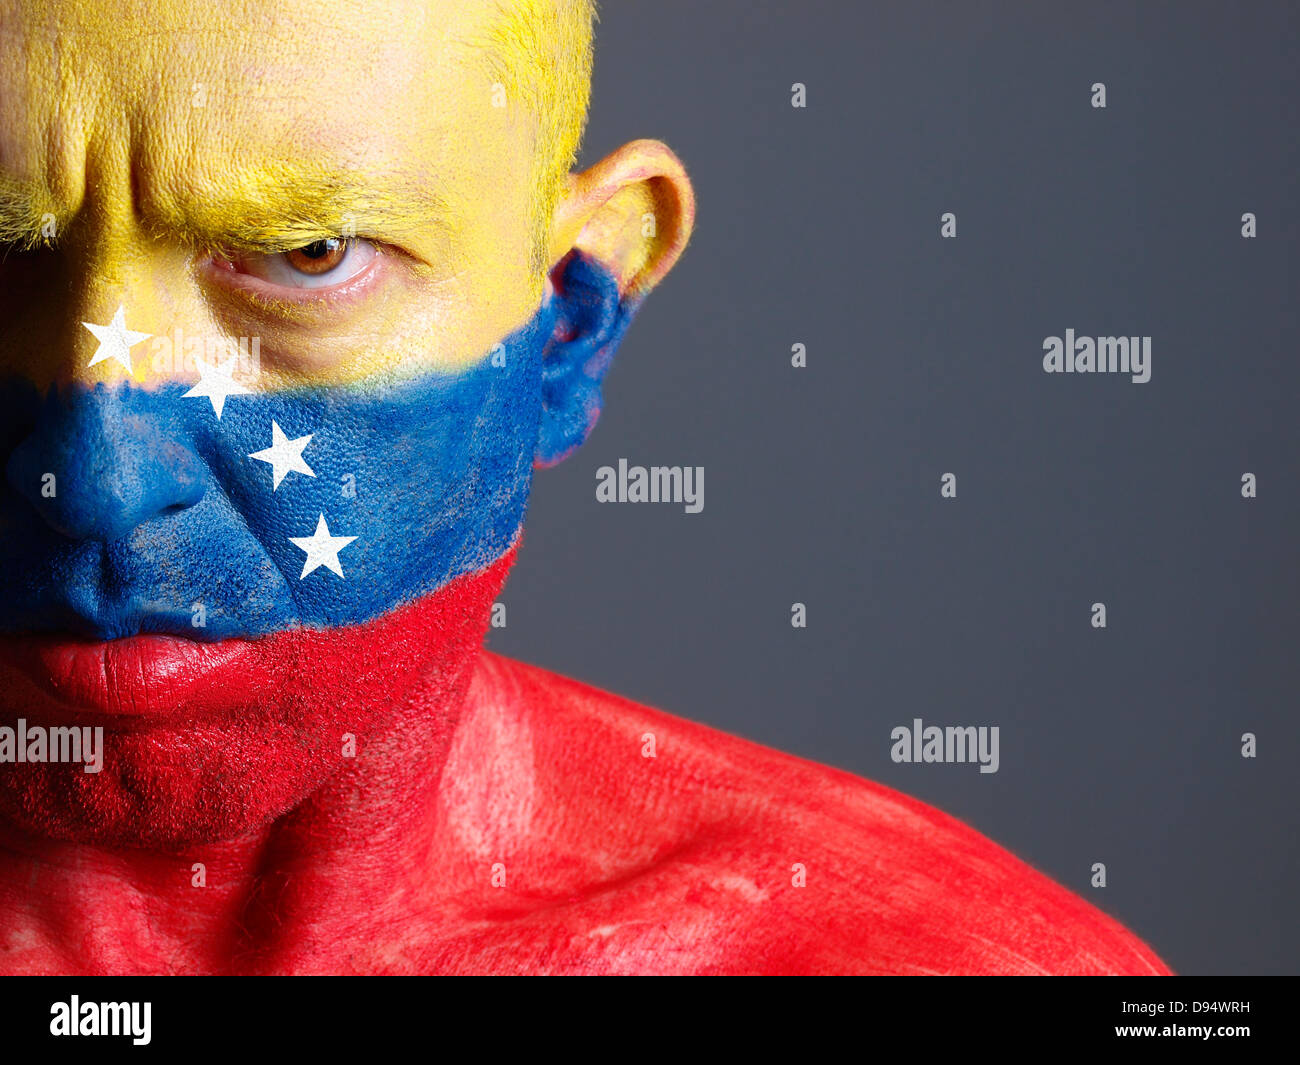 El hombre y su cara pintada con la bandera de Venezuela. El hombre es grave y composición fotográfica deja sólo la mitad de la FAC Foto de stock